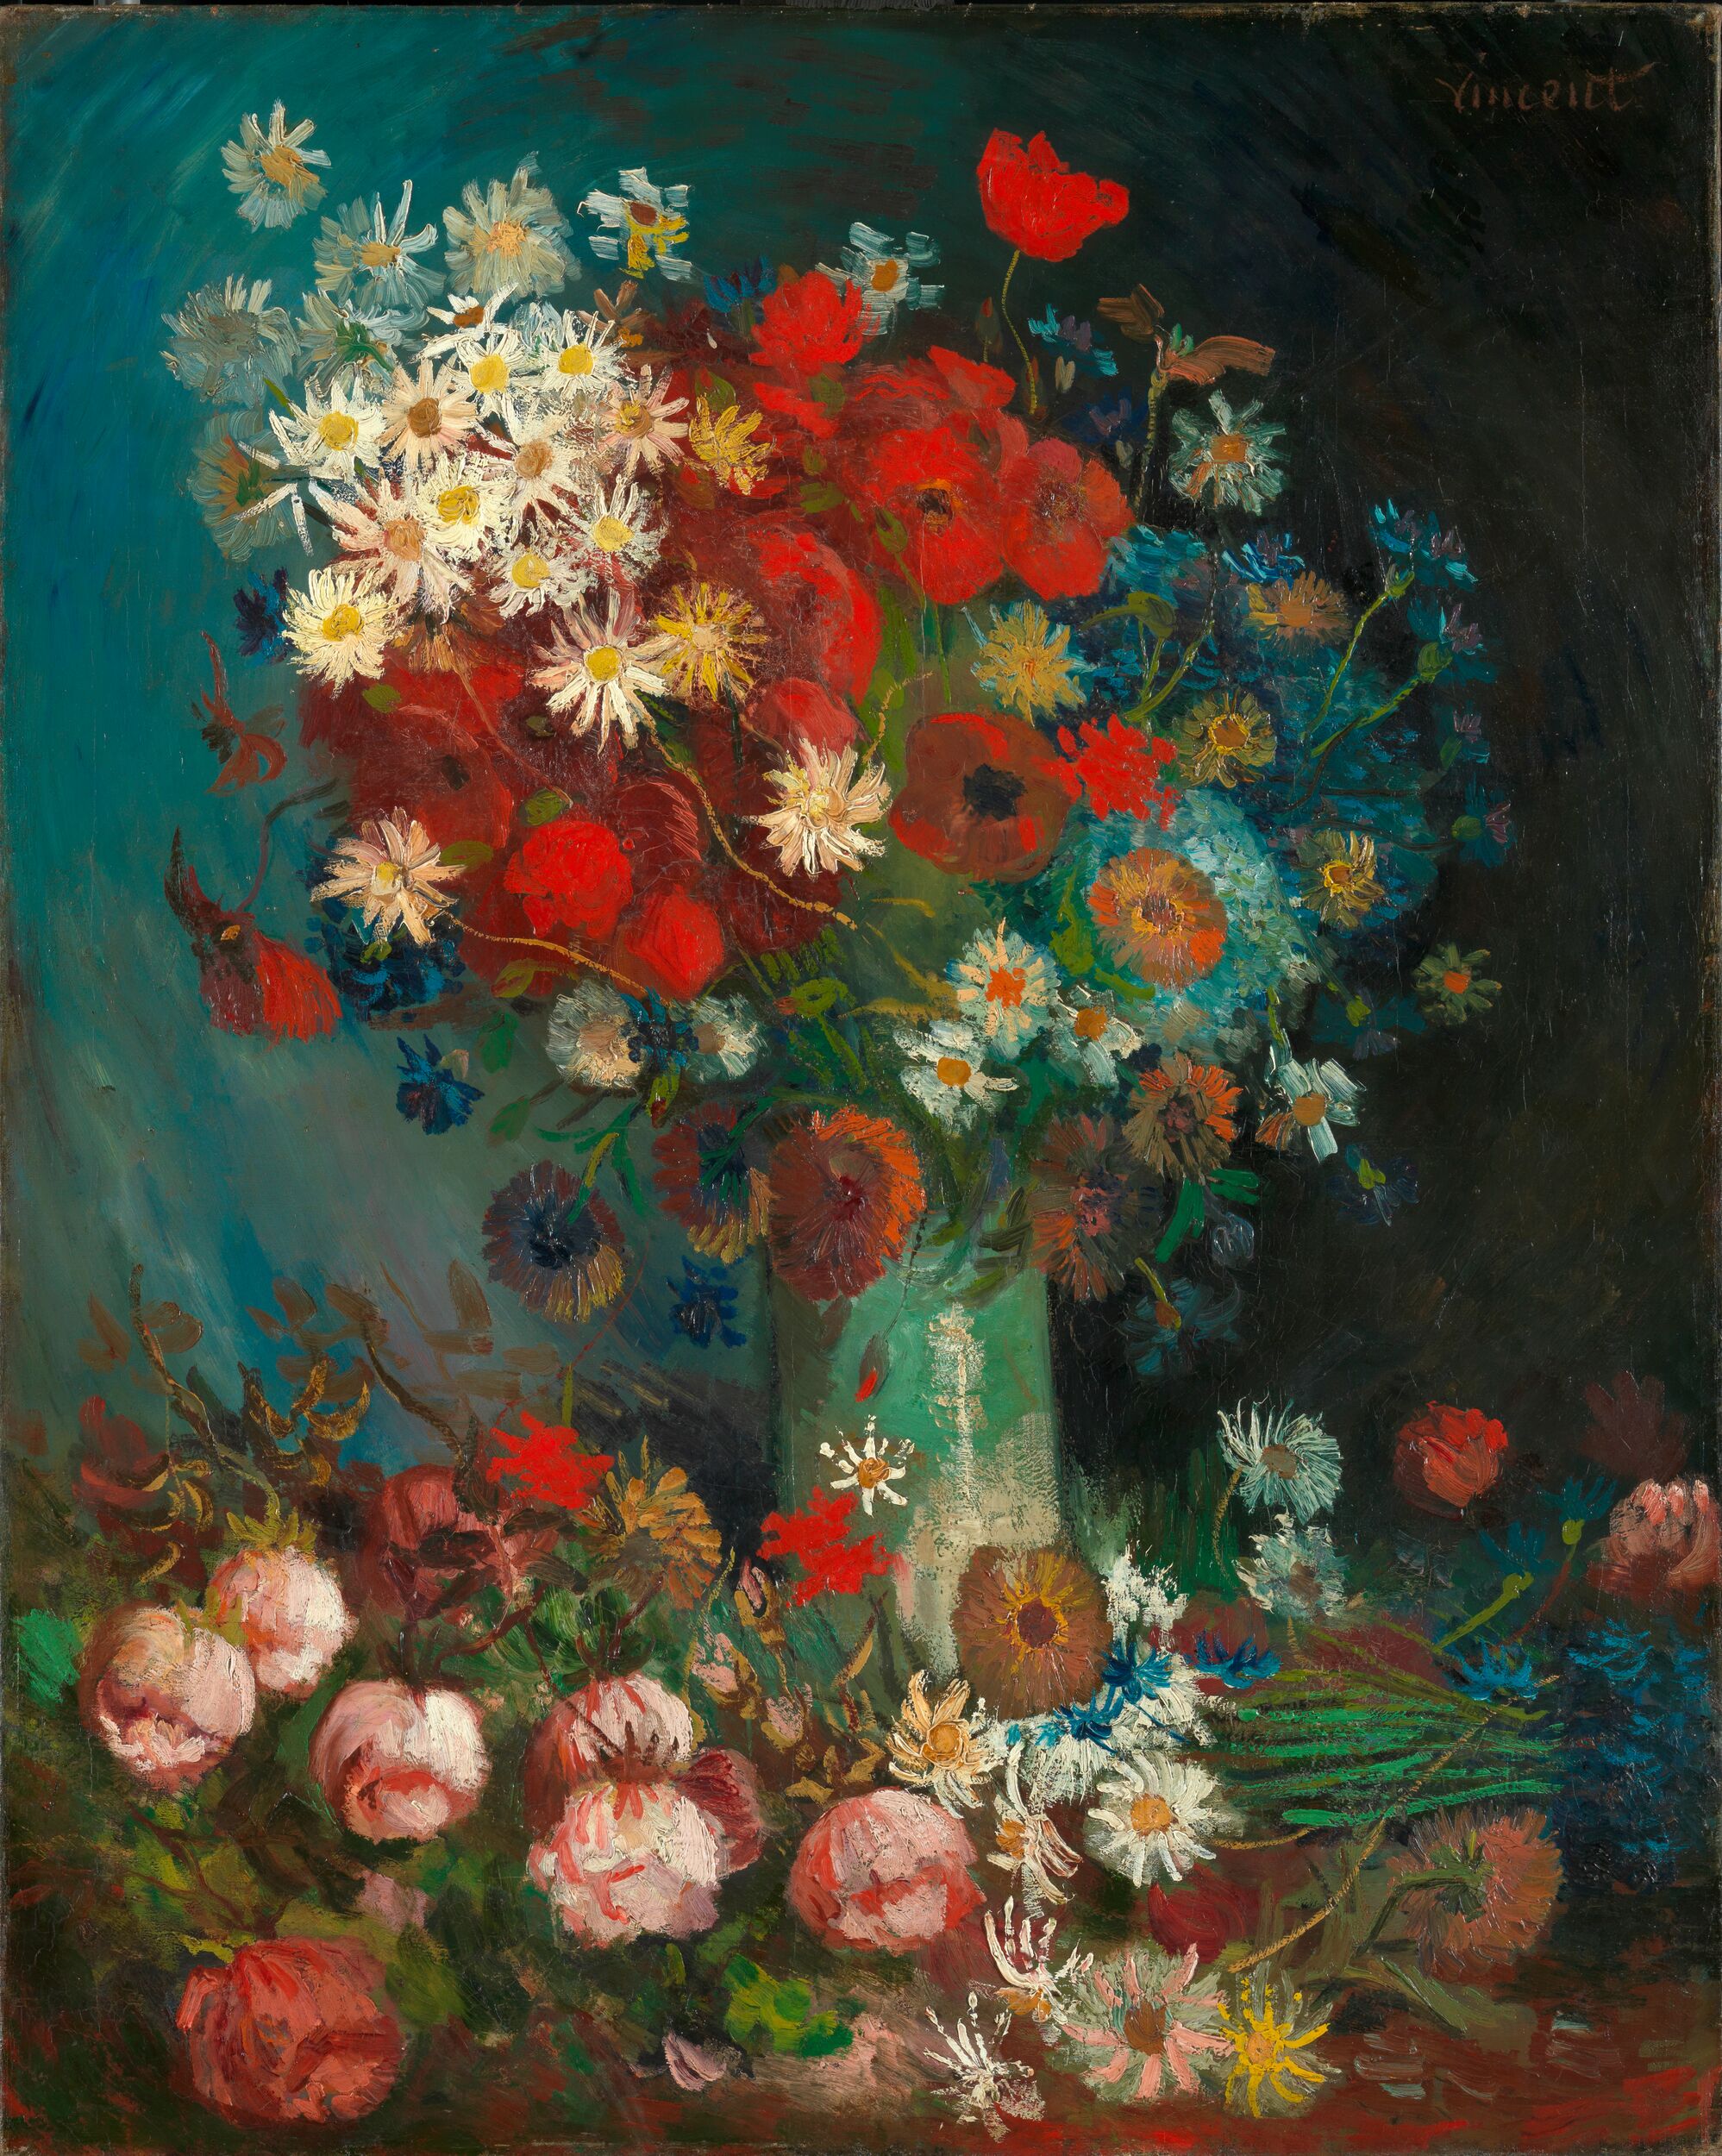 Stilleven met akkerbloemen en rozen by Vincent Van Gogh - 1886-1887 - 100 x 70 cm Kröller-Müller Museum